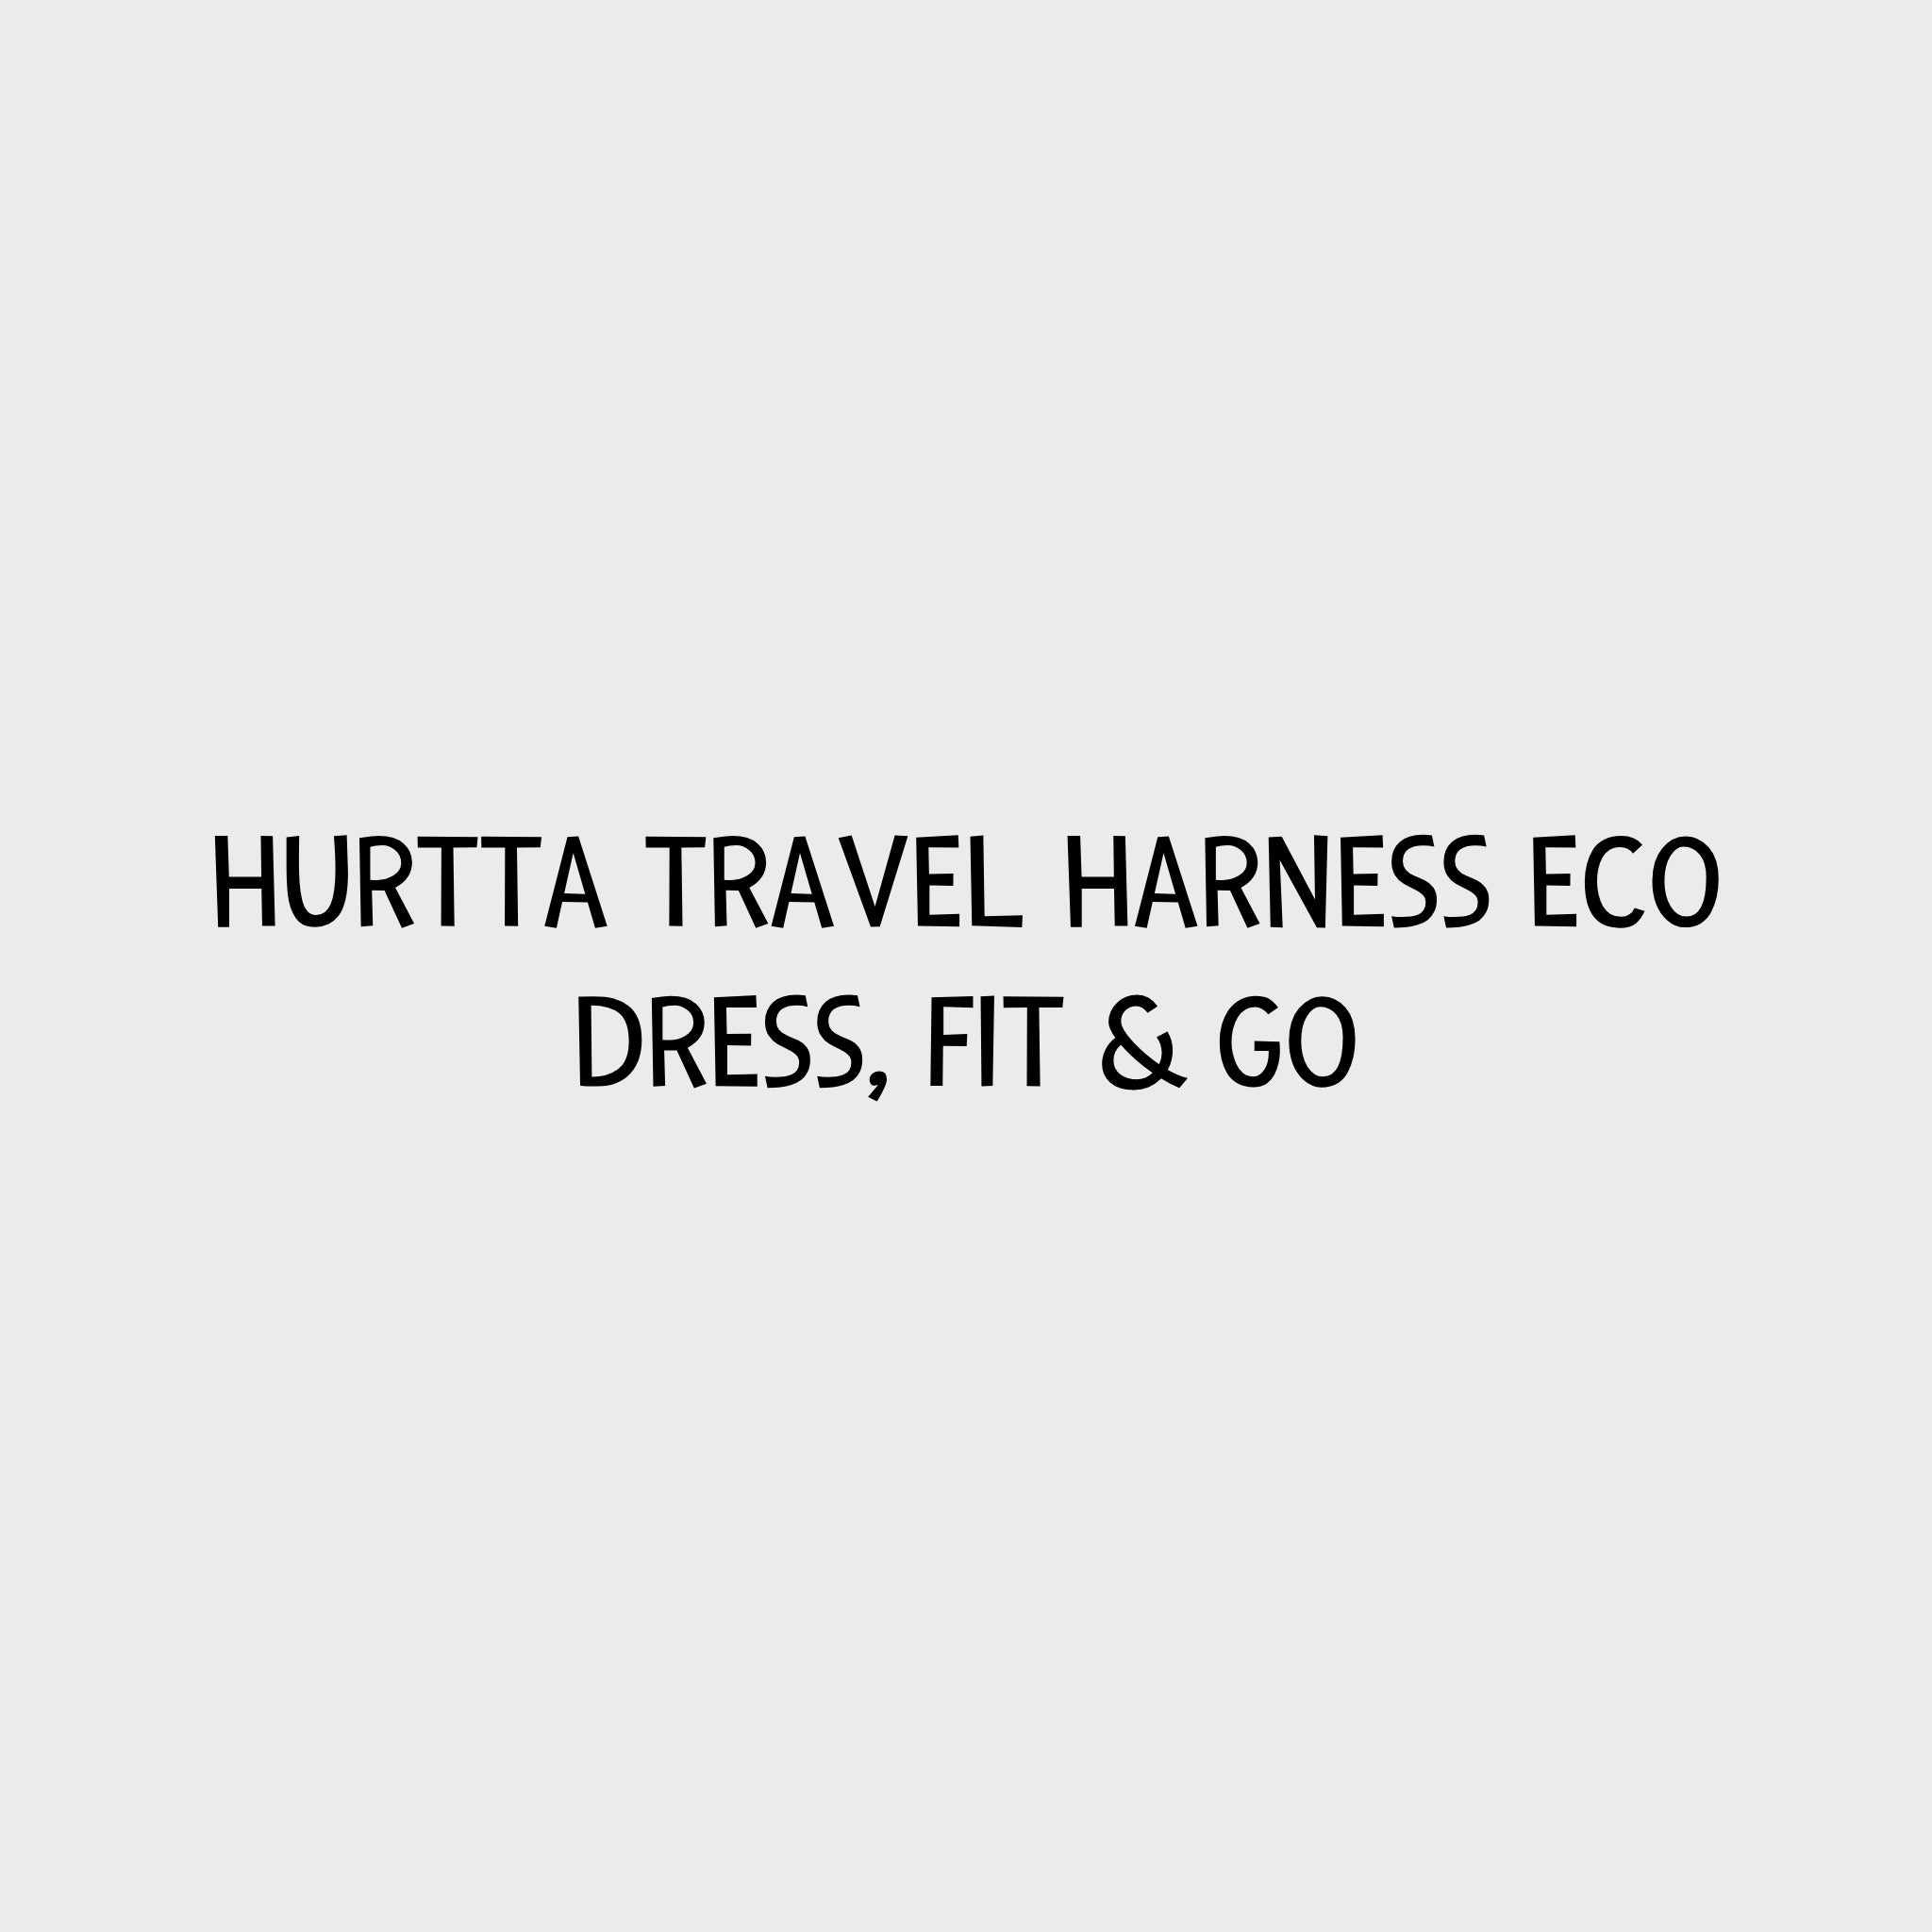 Video - Hurtta Travel Harness ECO - Dress, Fit & Go